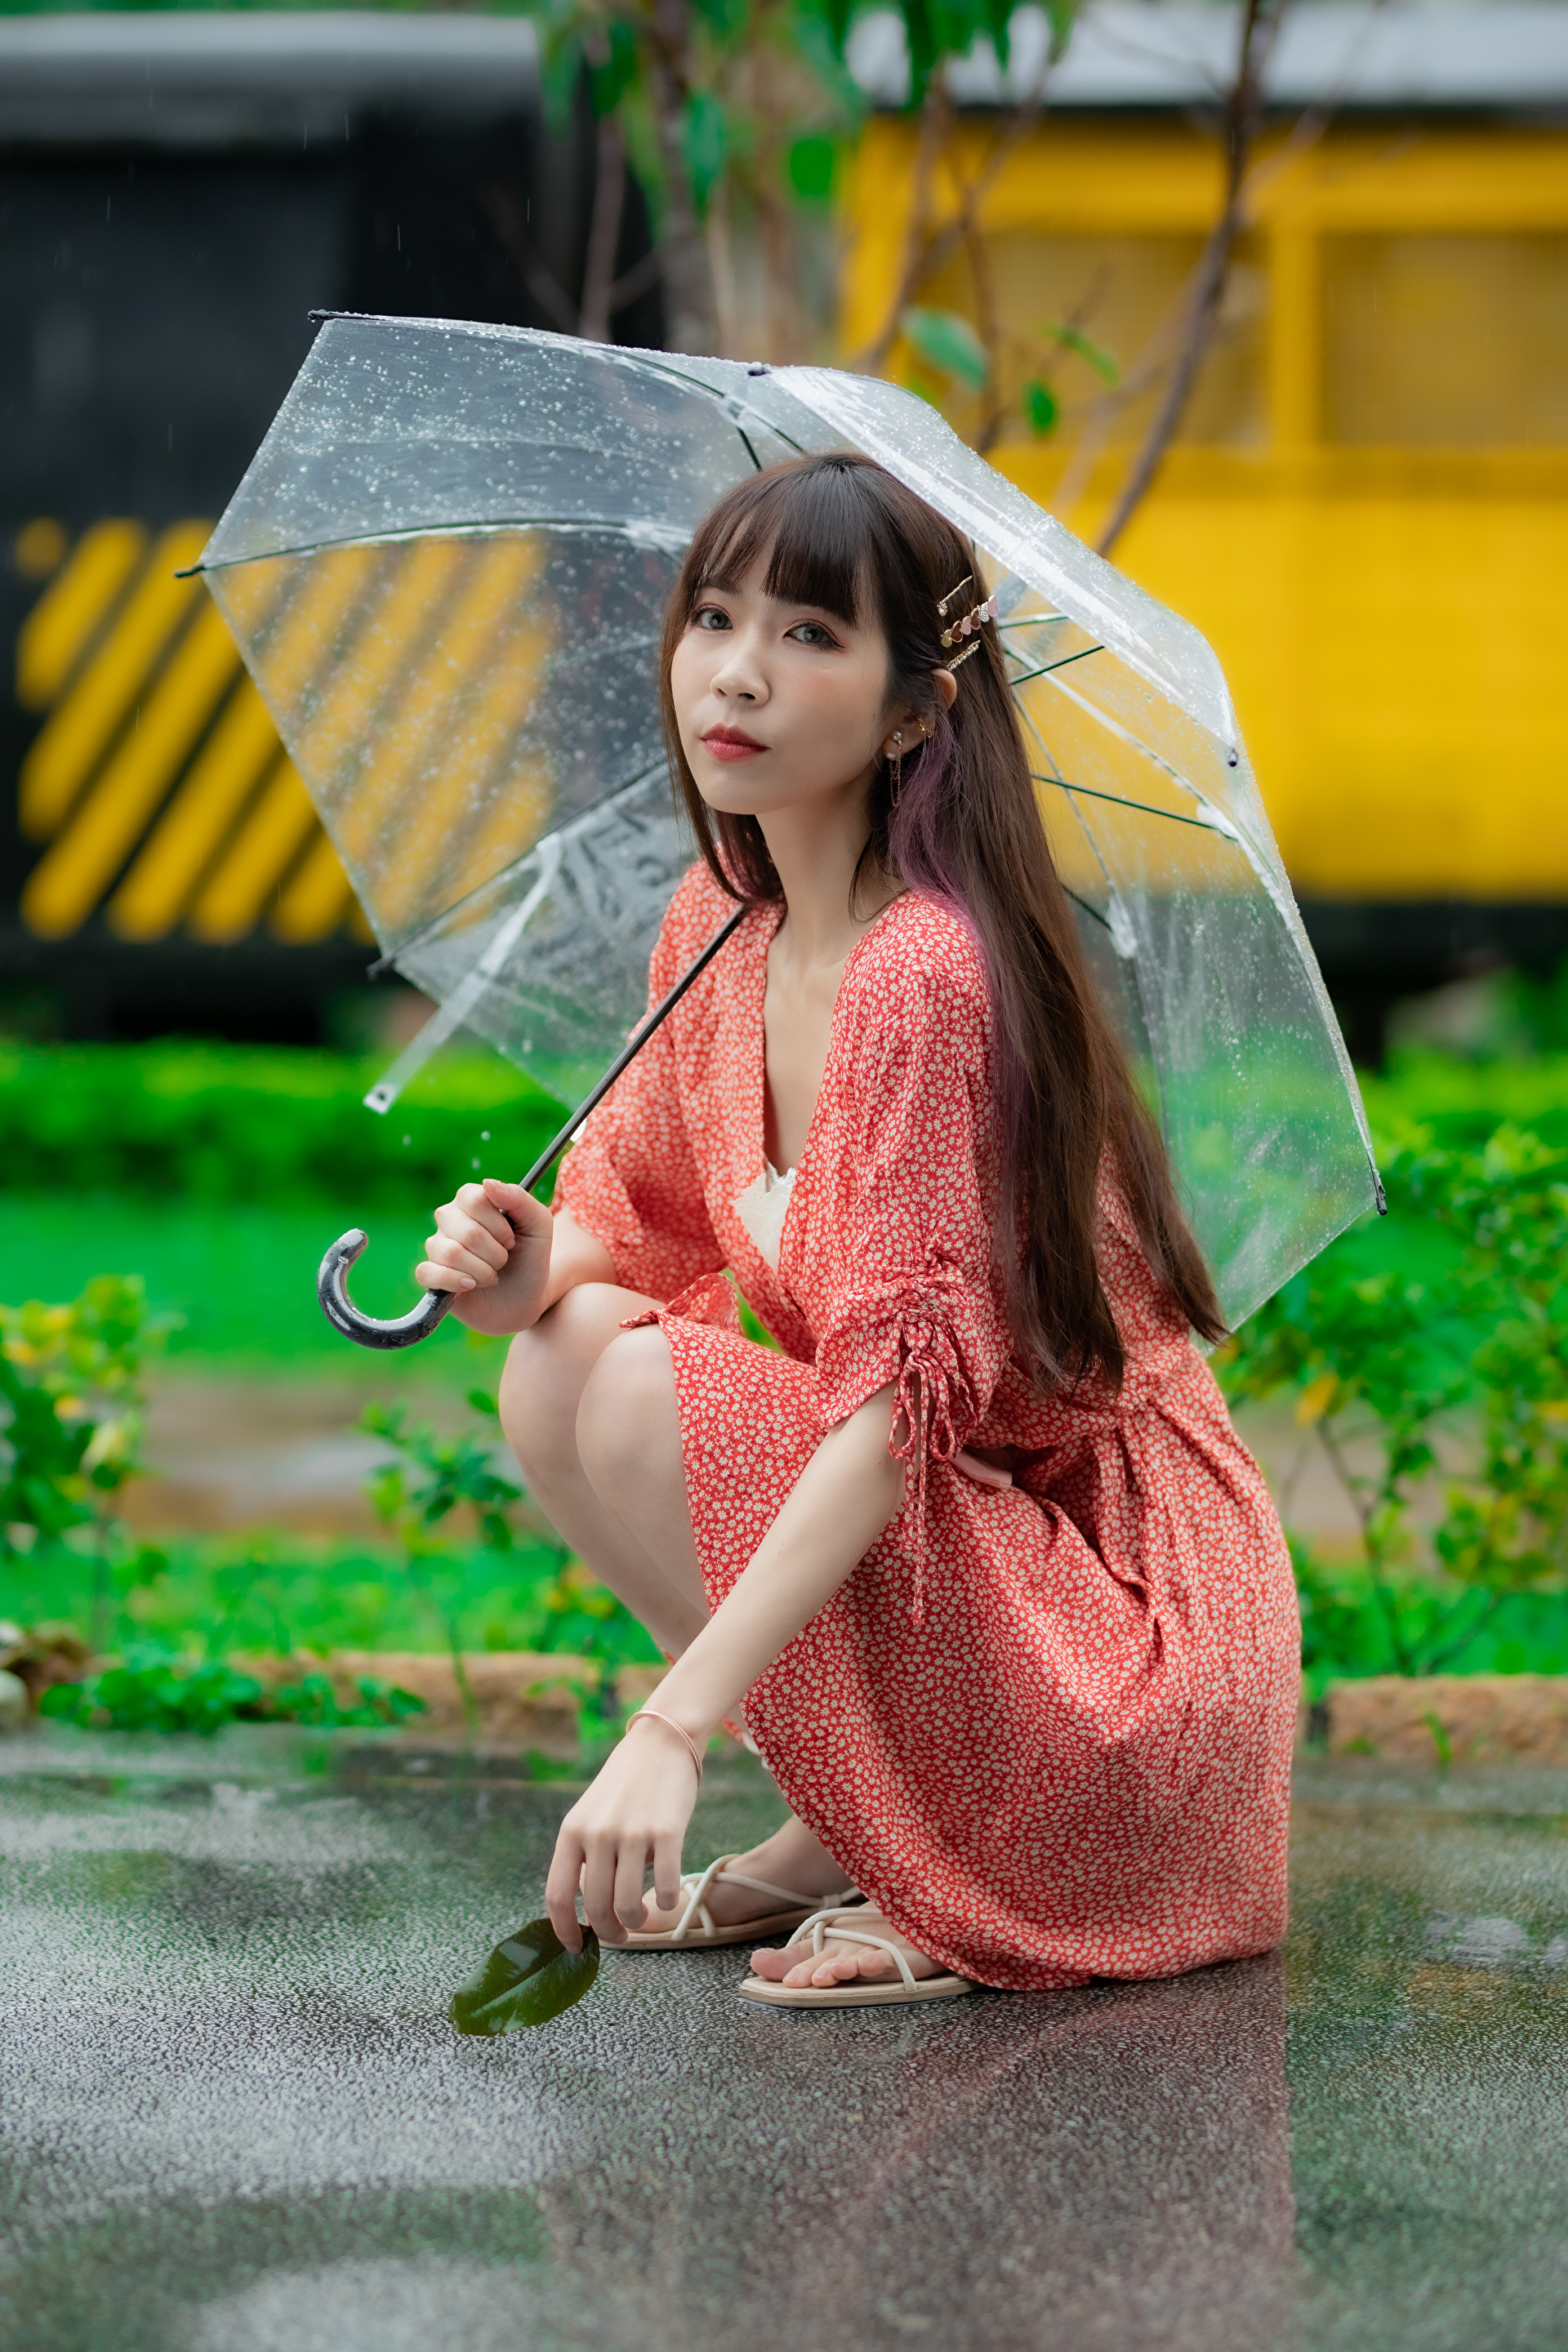 Umbrella dress. Китаянка с зонтиком. Азиатская девушка с зонтиком. Платье зонтик. Позируем с зонтиком.